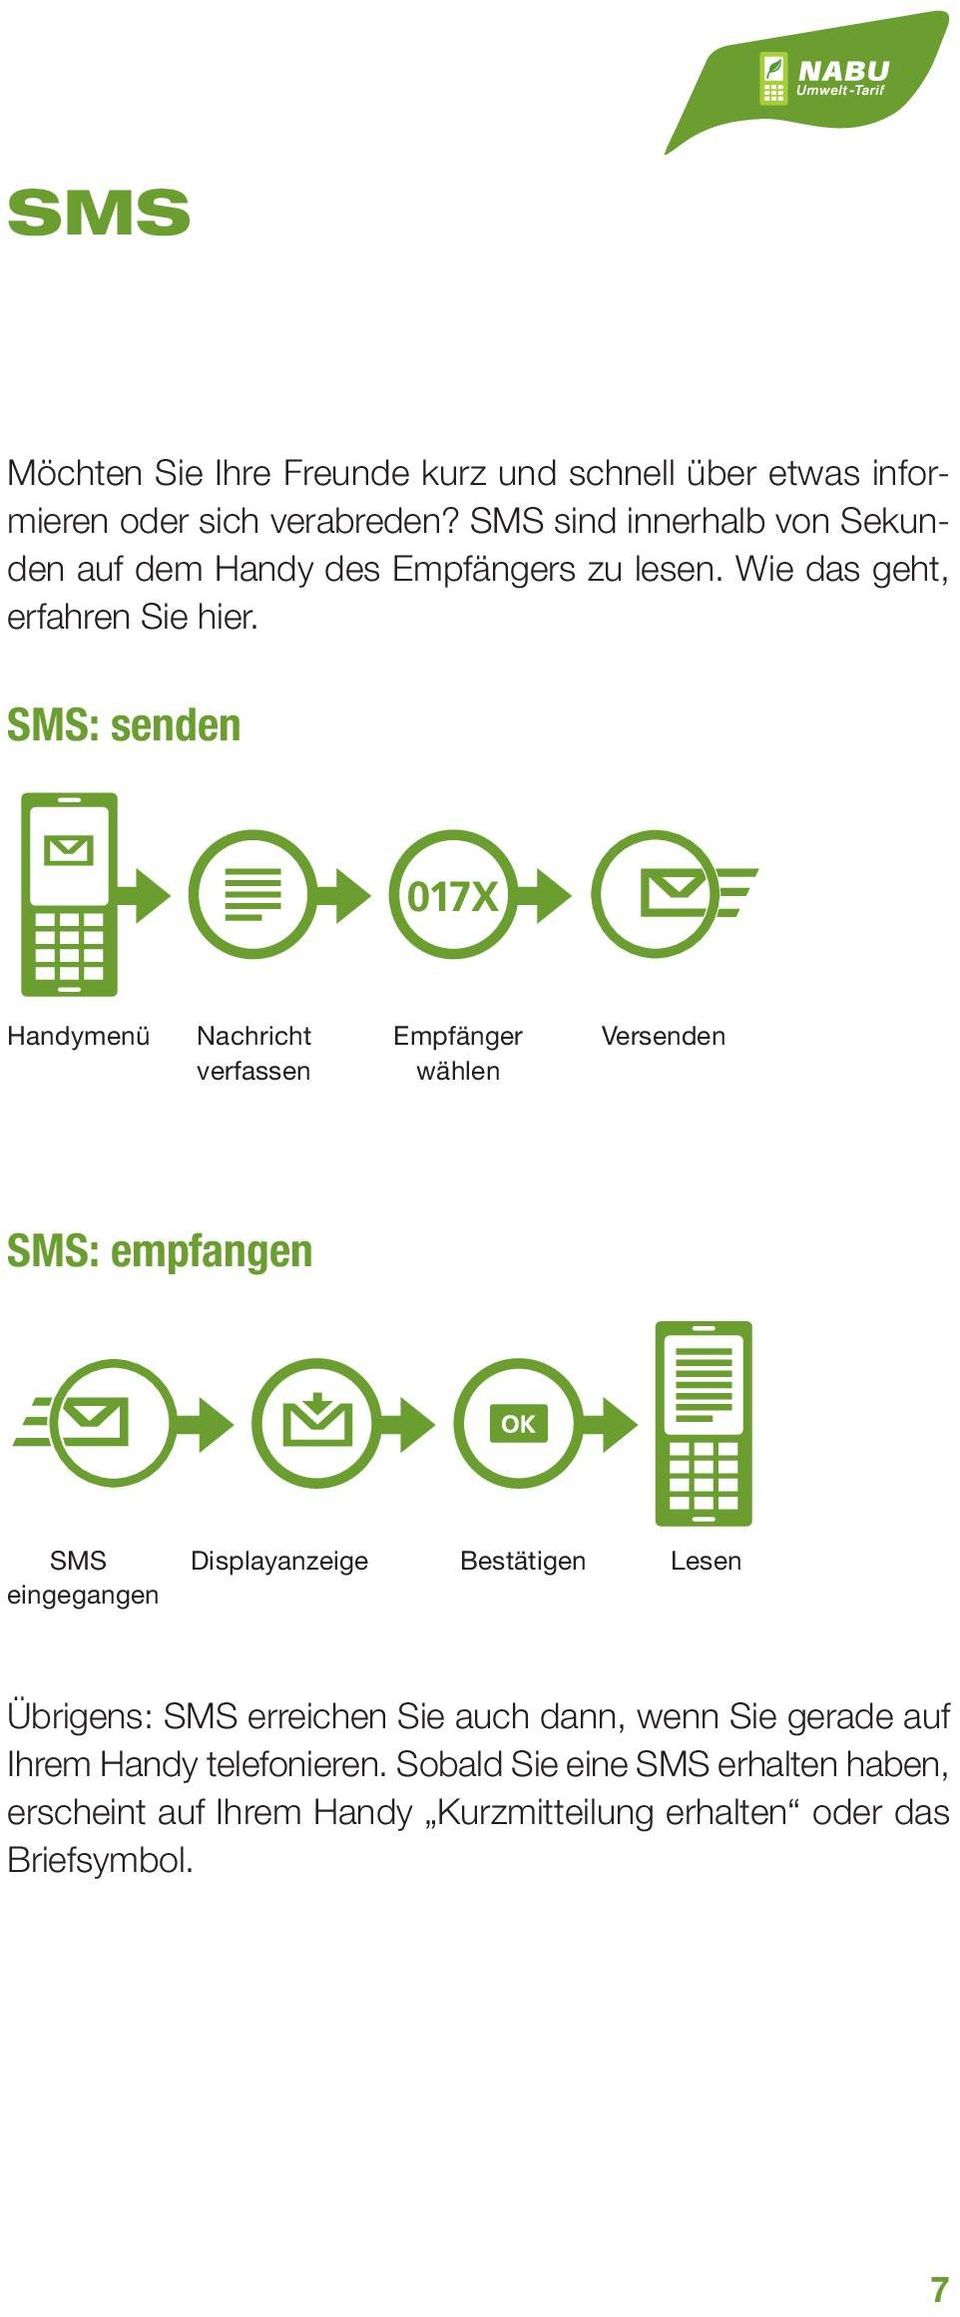 SMS: senden Handymenü Nachricht verfassen Empfänger wählen Versenden SMS: empfangen SMS eingegangen Displayanzeige Bestätigen